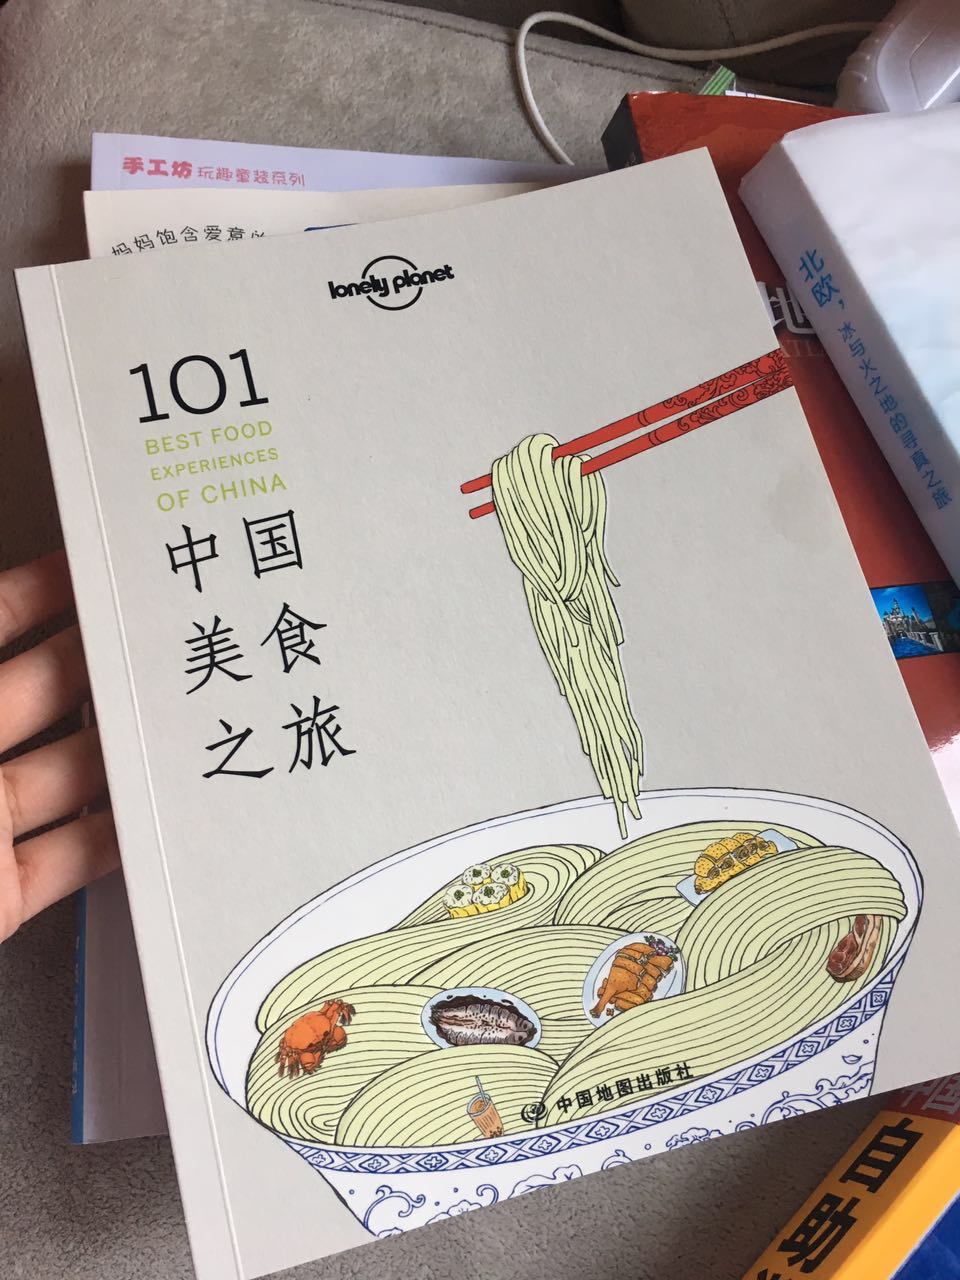 挺喜欢这本书的，觉得可以了解中国各地美食。